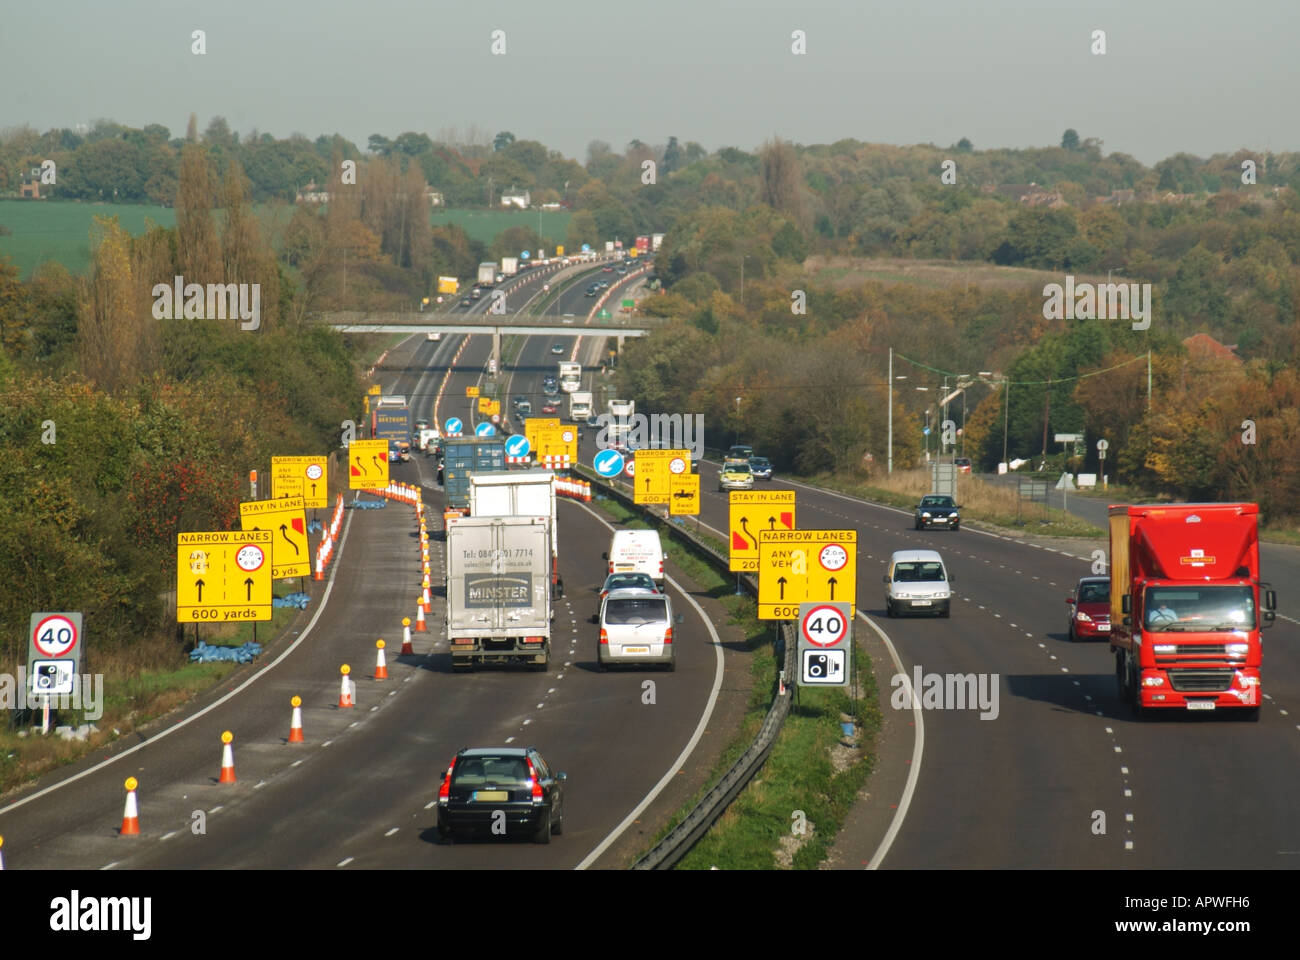 Trafic sur la route principale A12 Ingatestone contournement de la vitesse caméra panneau d'avertissement et changement de voie jaune panneaux cônes marques près de travaux de route Essex Angleterre Royaume-Uni Banque D'Images